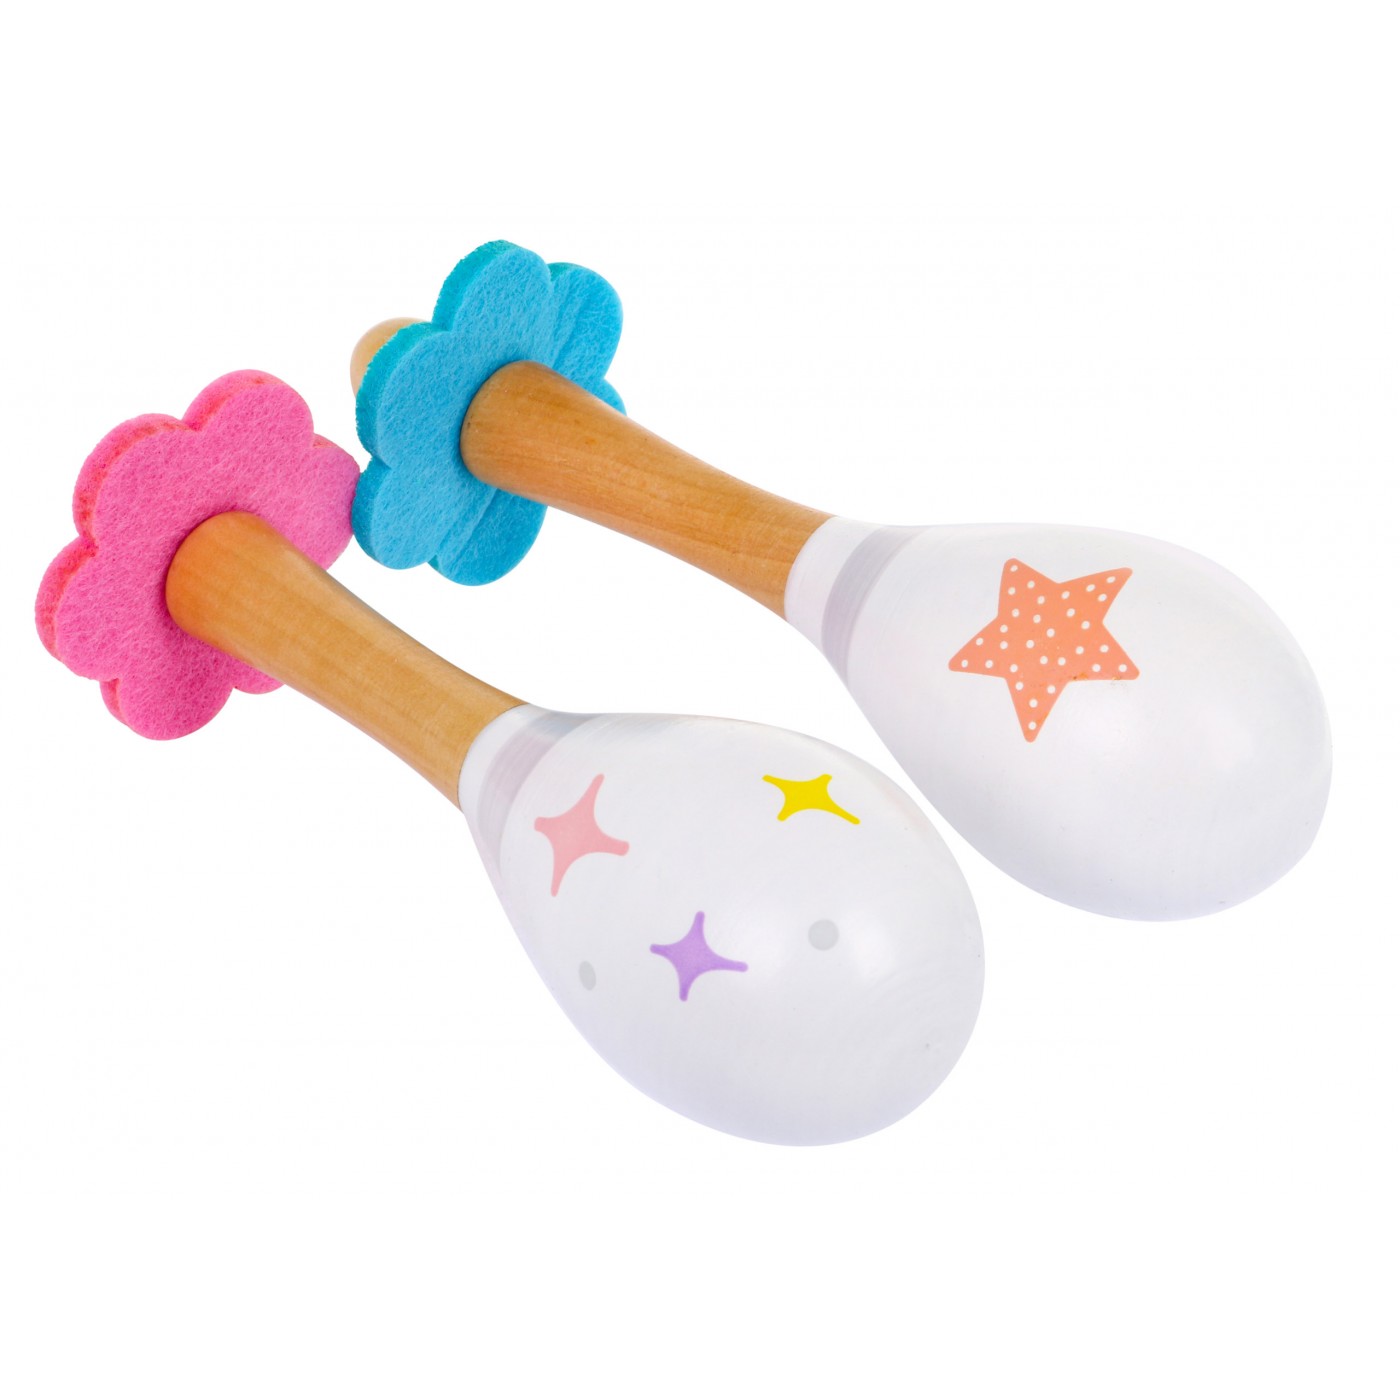 Drewniany zestaw Instrumentów muzycznych dla dzieci 3+ Tamburyn Flet Cymbałki Marakasy + Pastelowe kolory